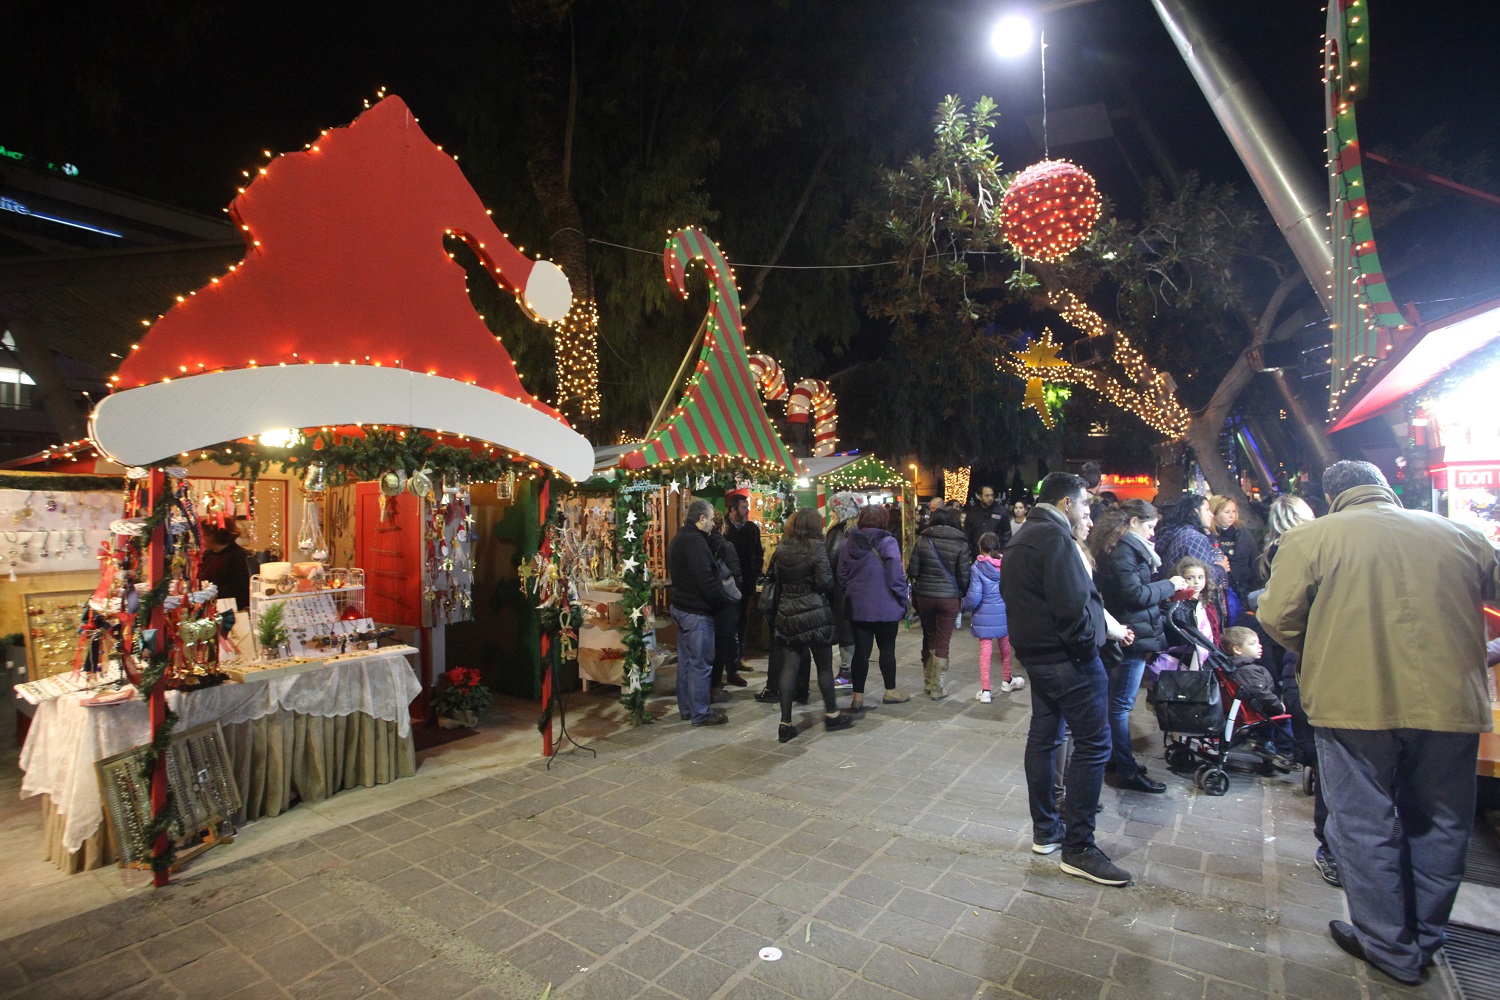 Οι Χριστουγεννιάτικες εκδηλώσεις του Σαββατοκύριακου στο Ηράκλειο